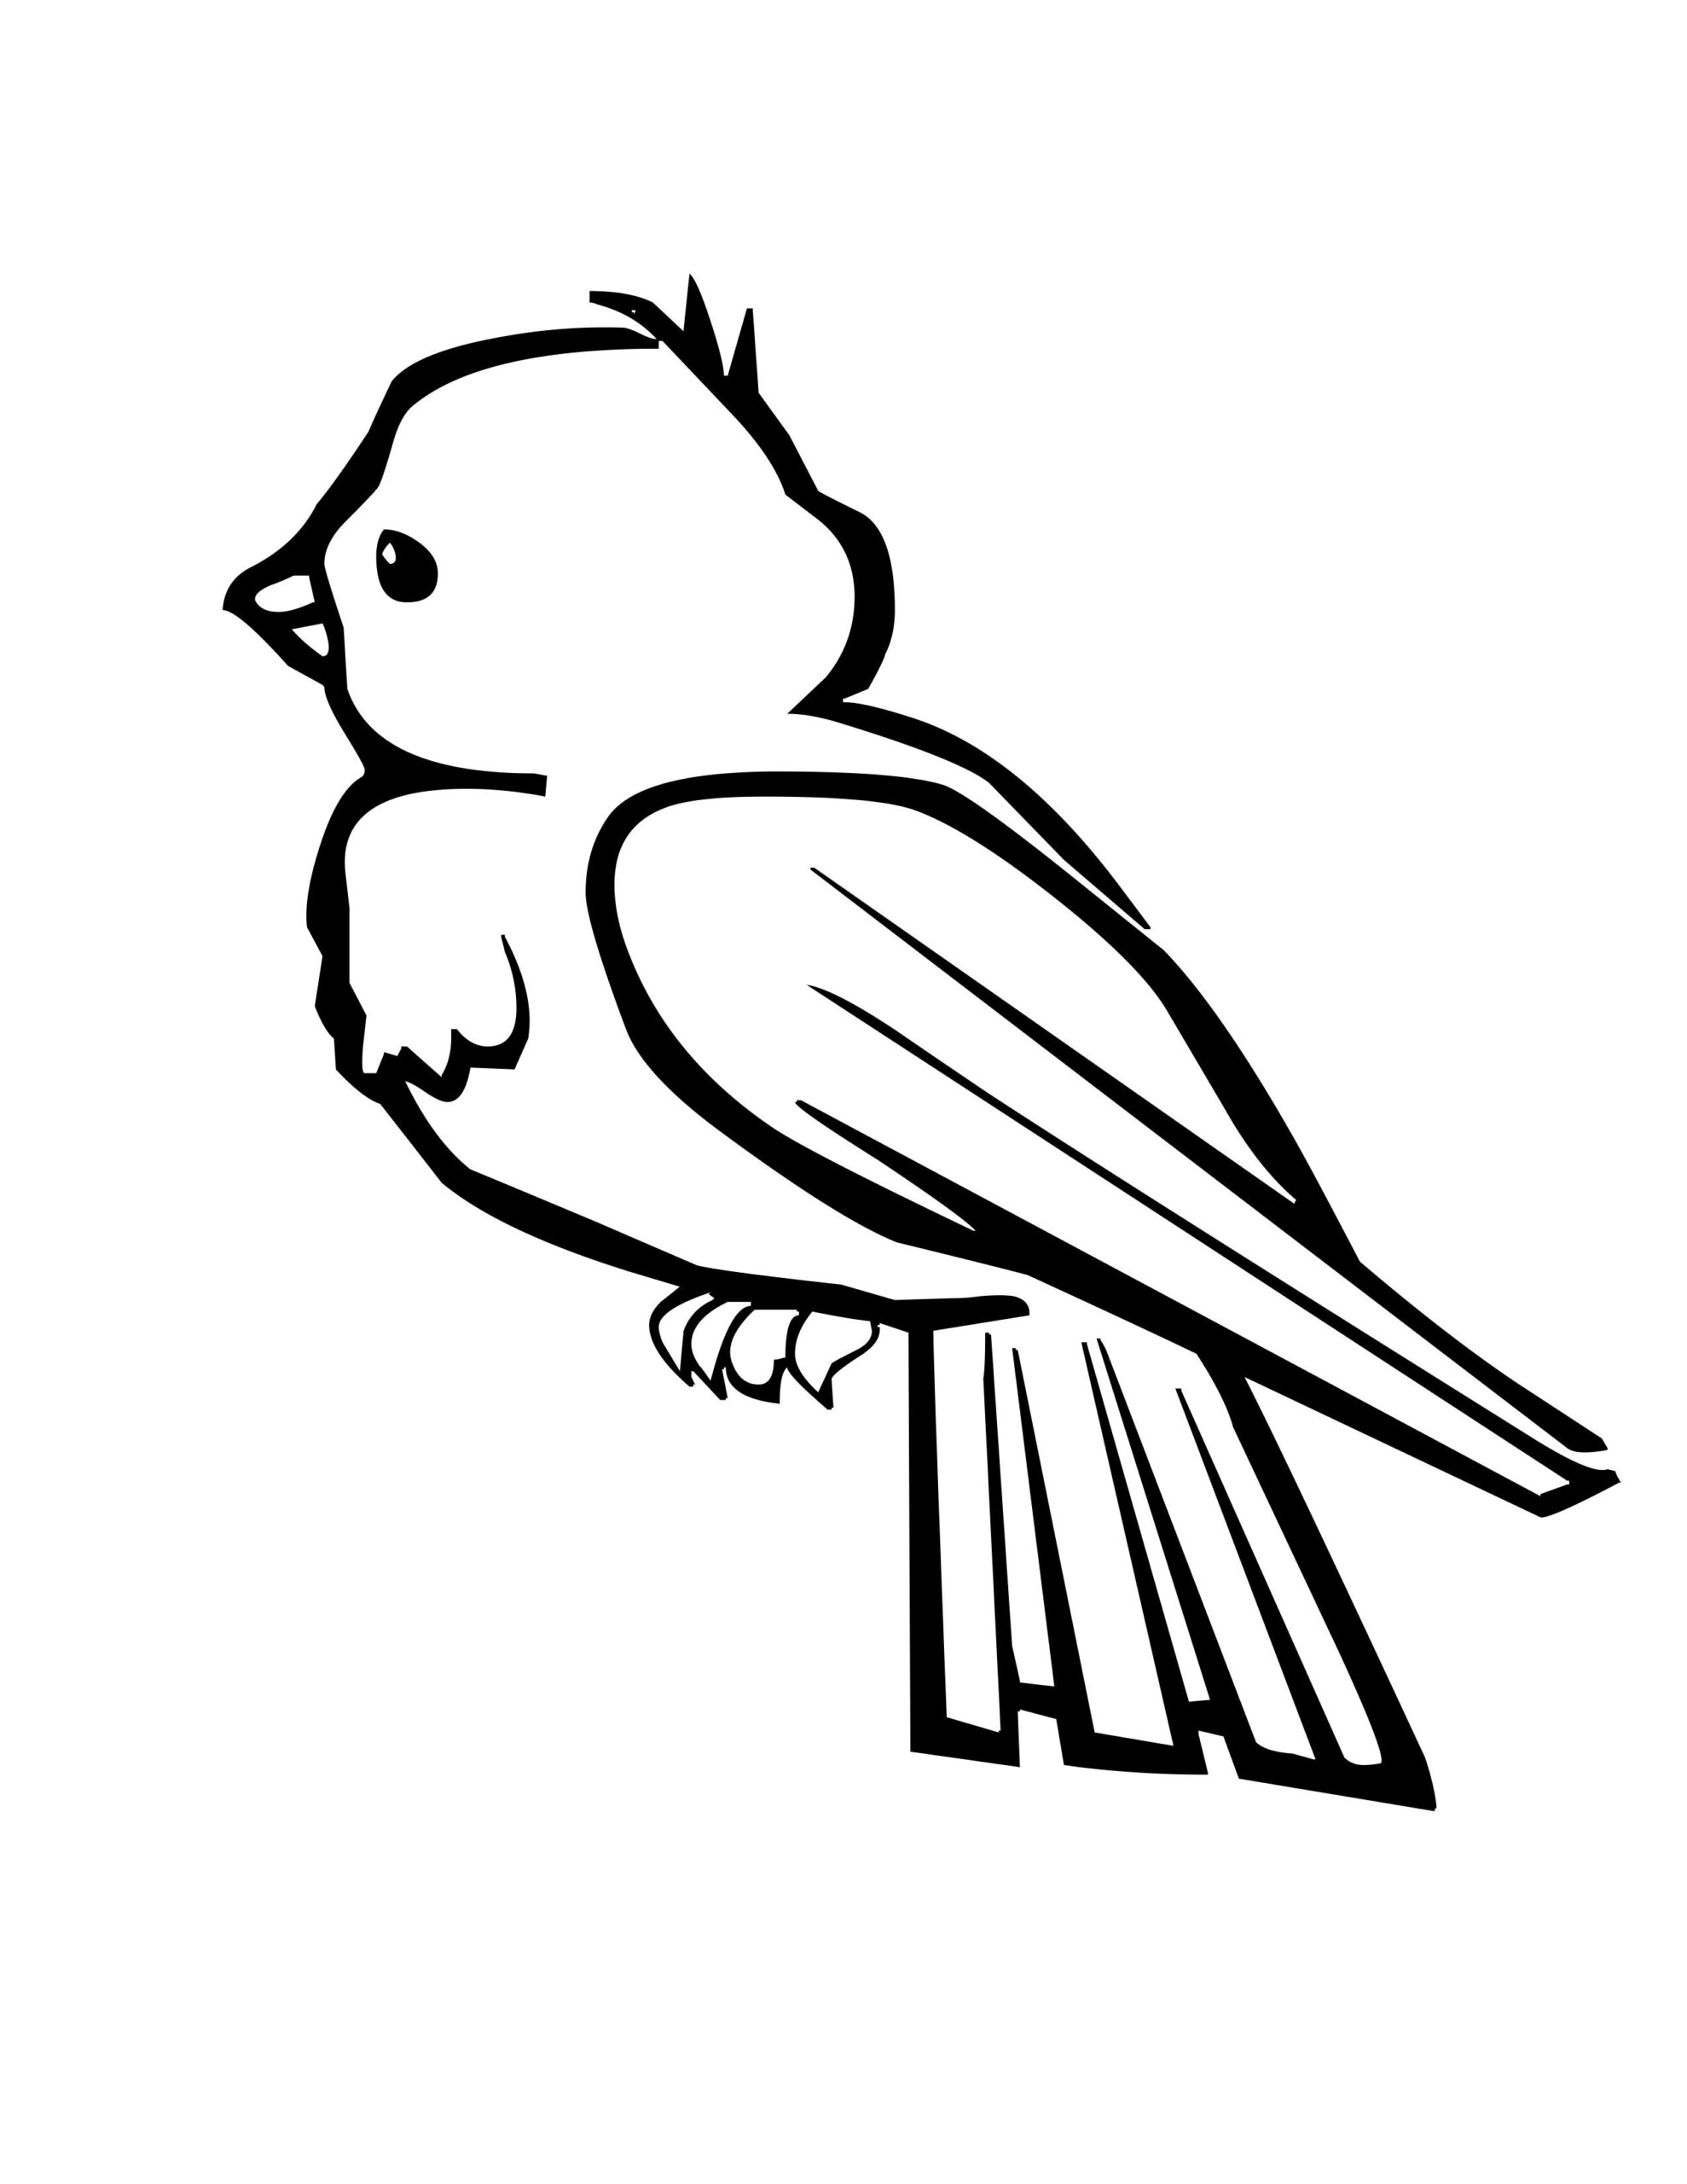 60 Tranh Tô Màu Con Chim 🐦 Dễ Thương Nhất Cho Bé